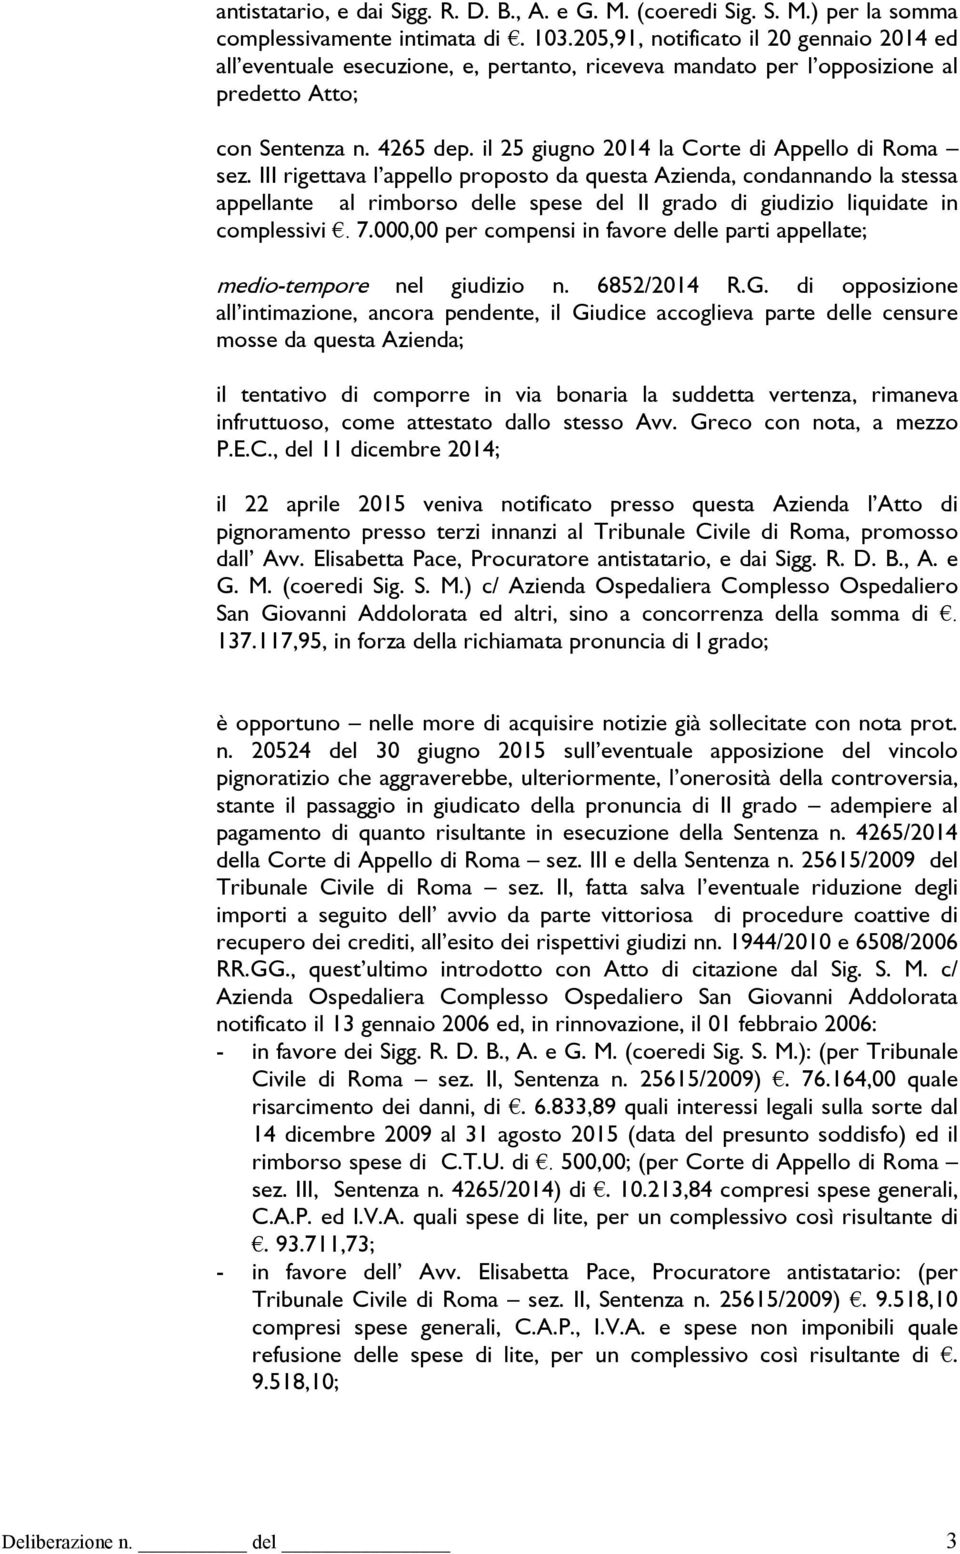 il 25 giugno 2014 la Corte di Appello di Roma sez.